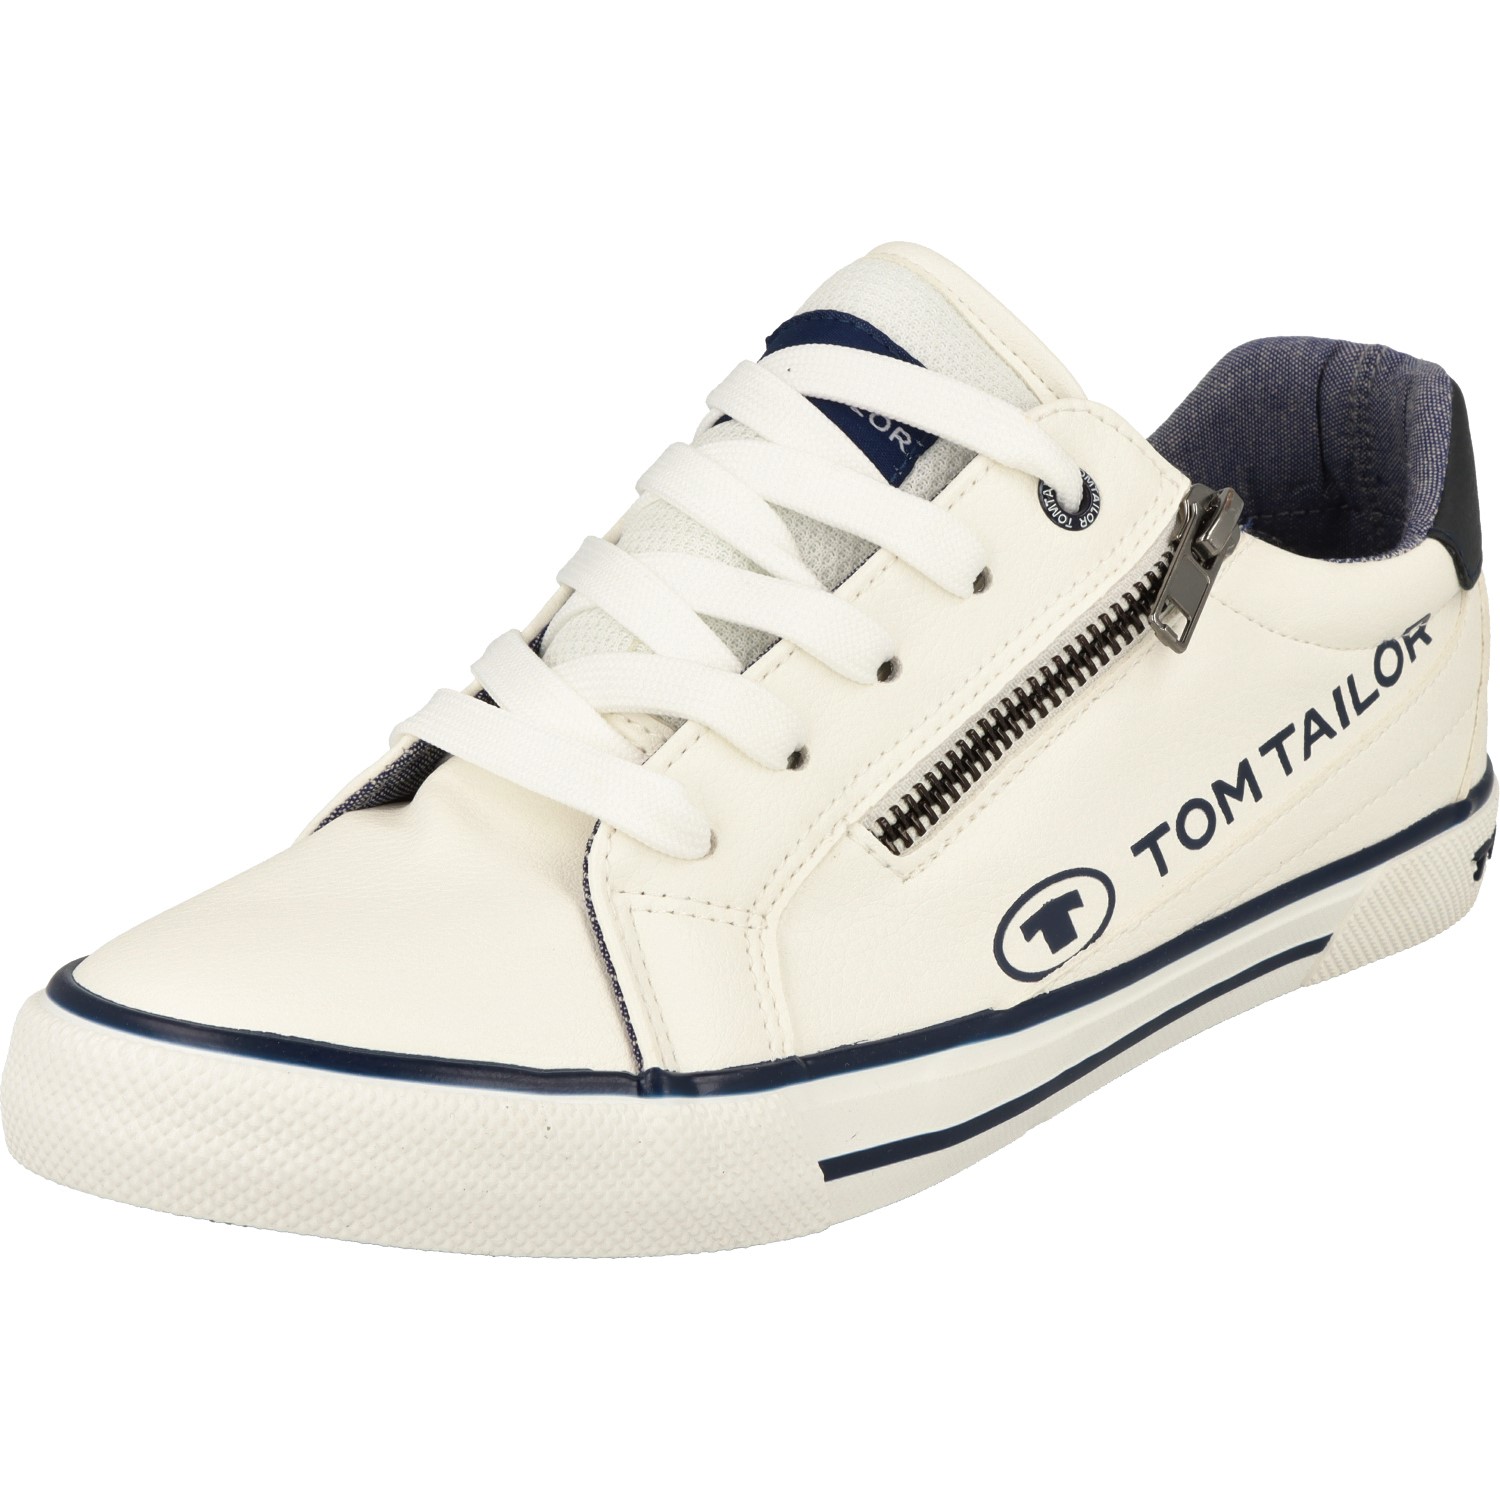 Tom Tailor Jungen Schuhe 5372901 Schnürschuhe Sneaker Halbschuhe Weiss